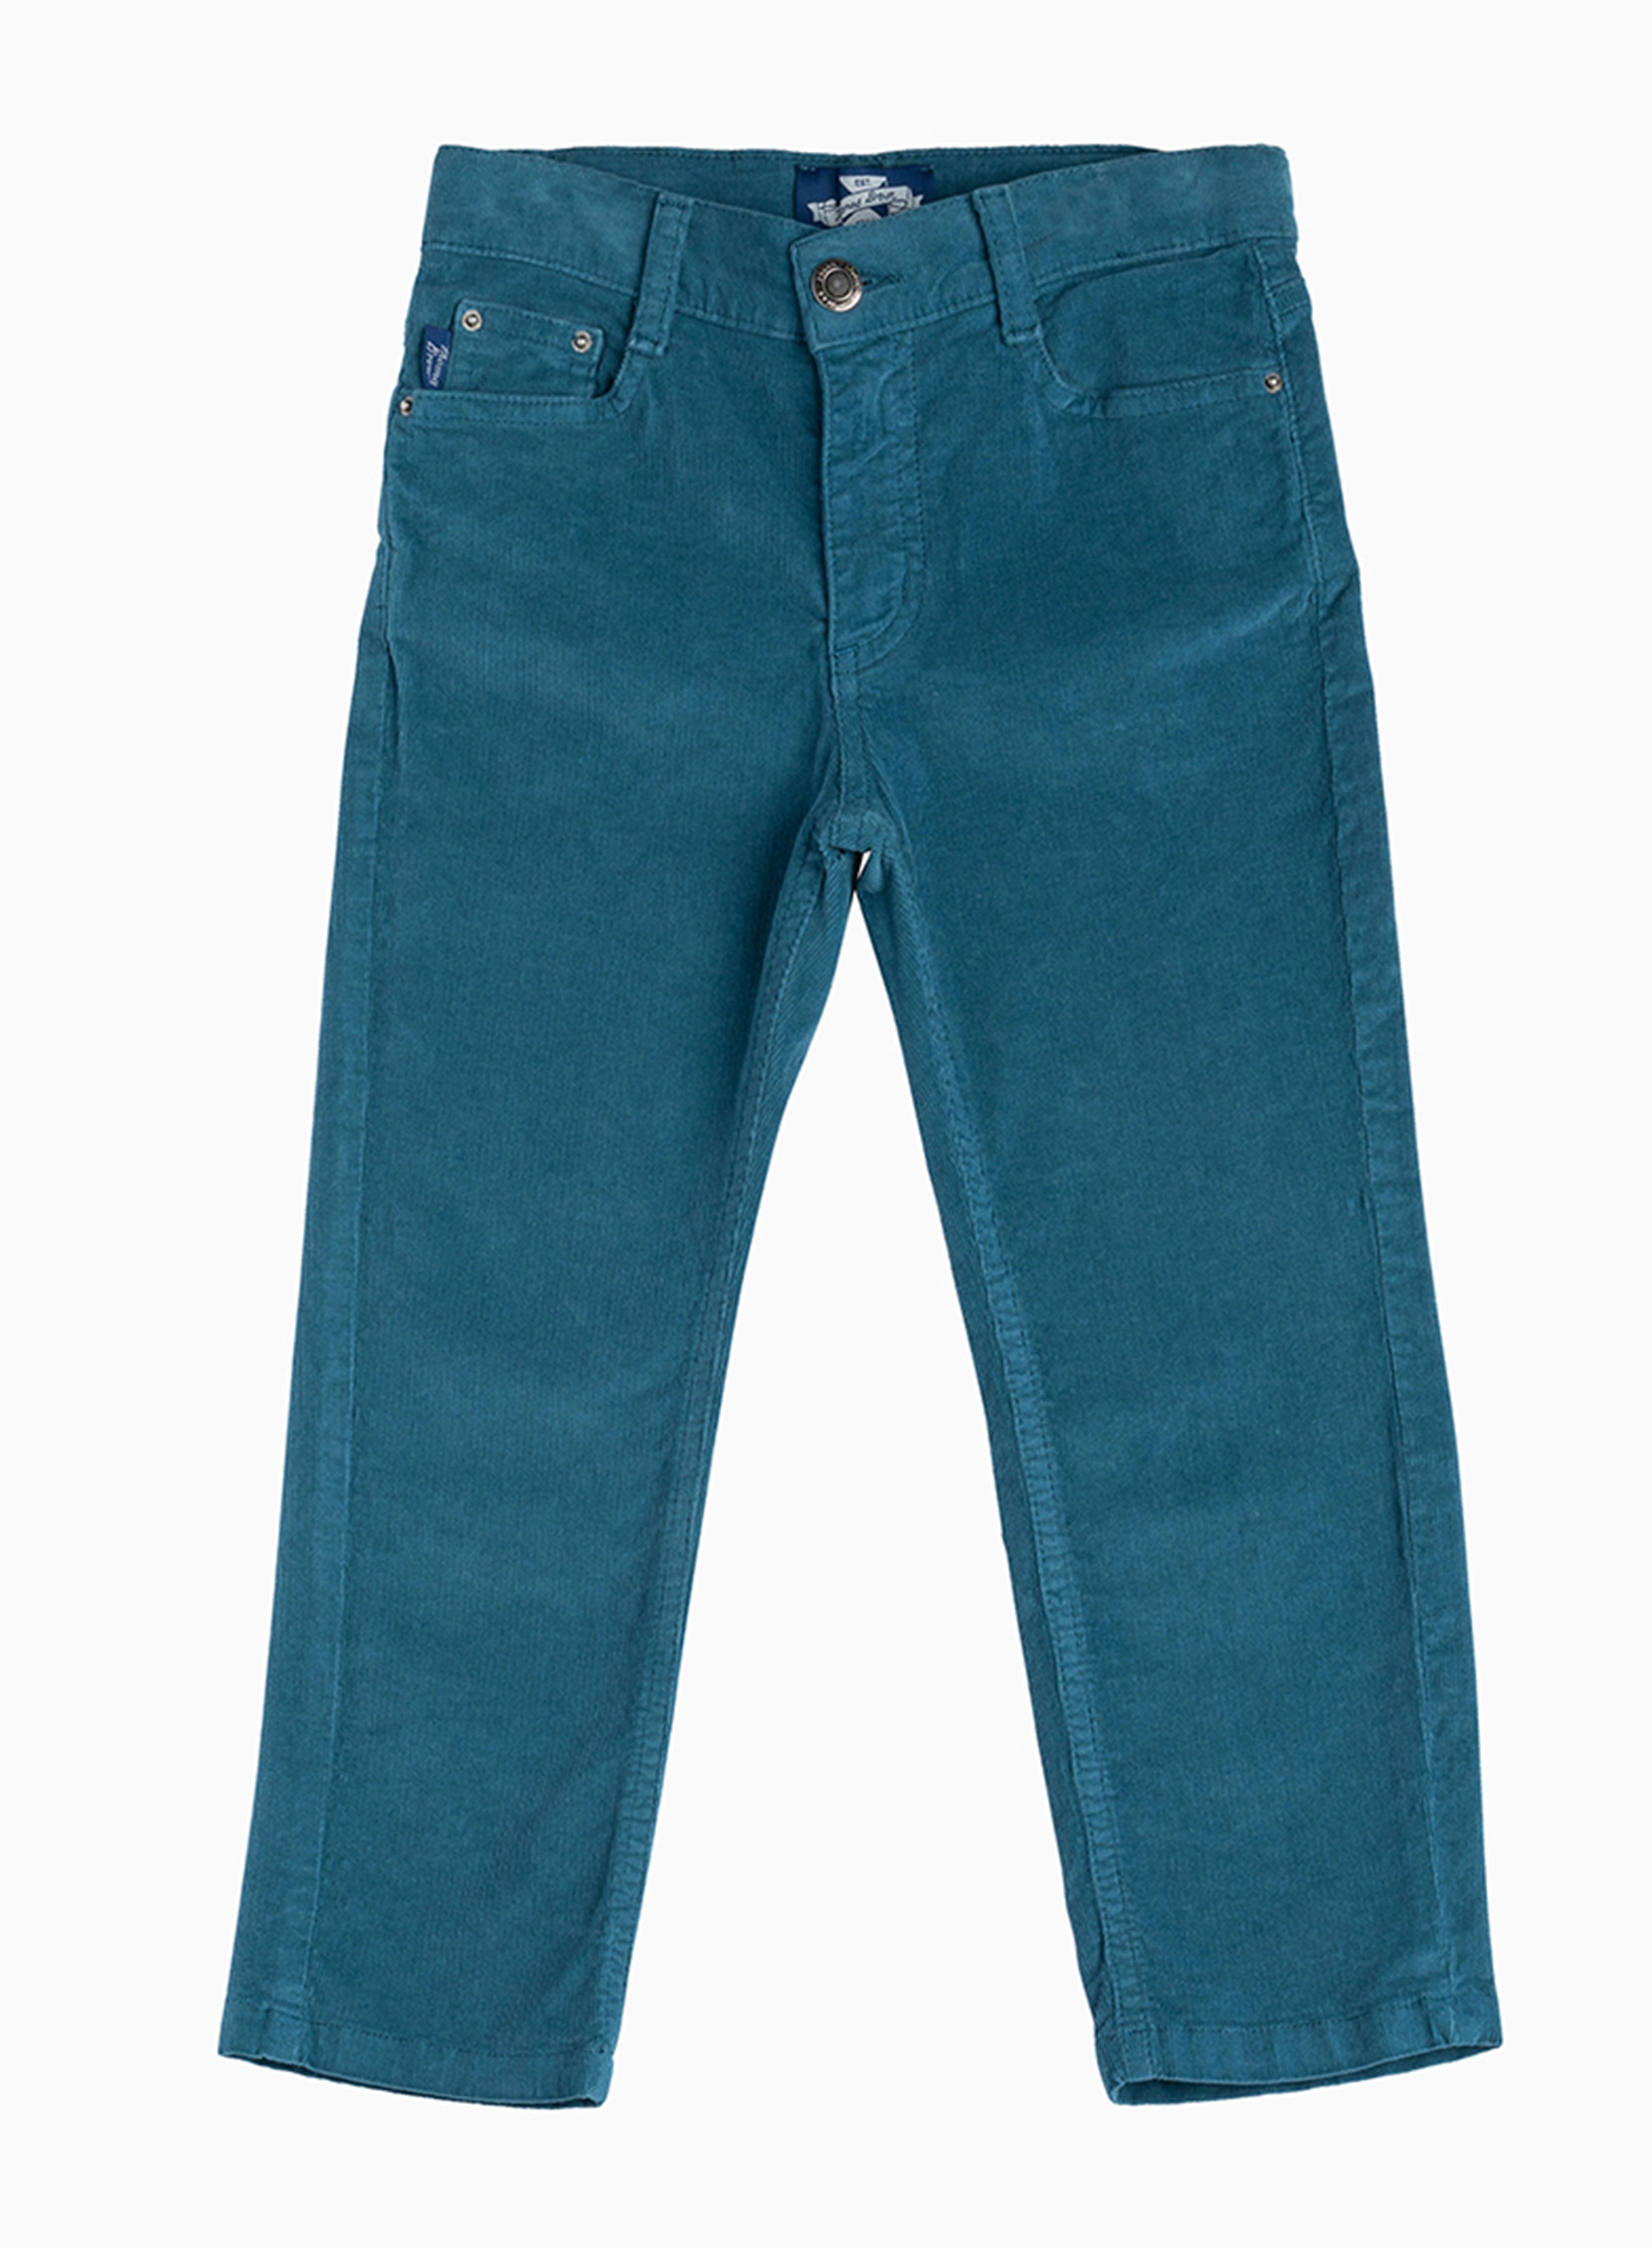 Jake Jeans in Cobalt Blue